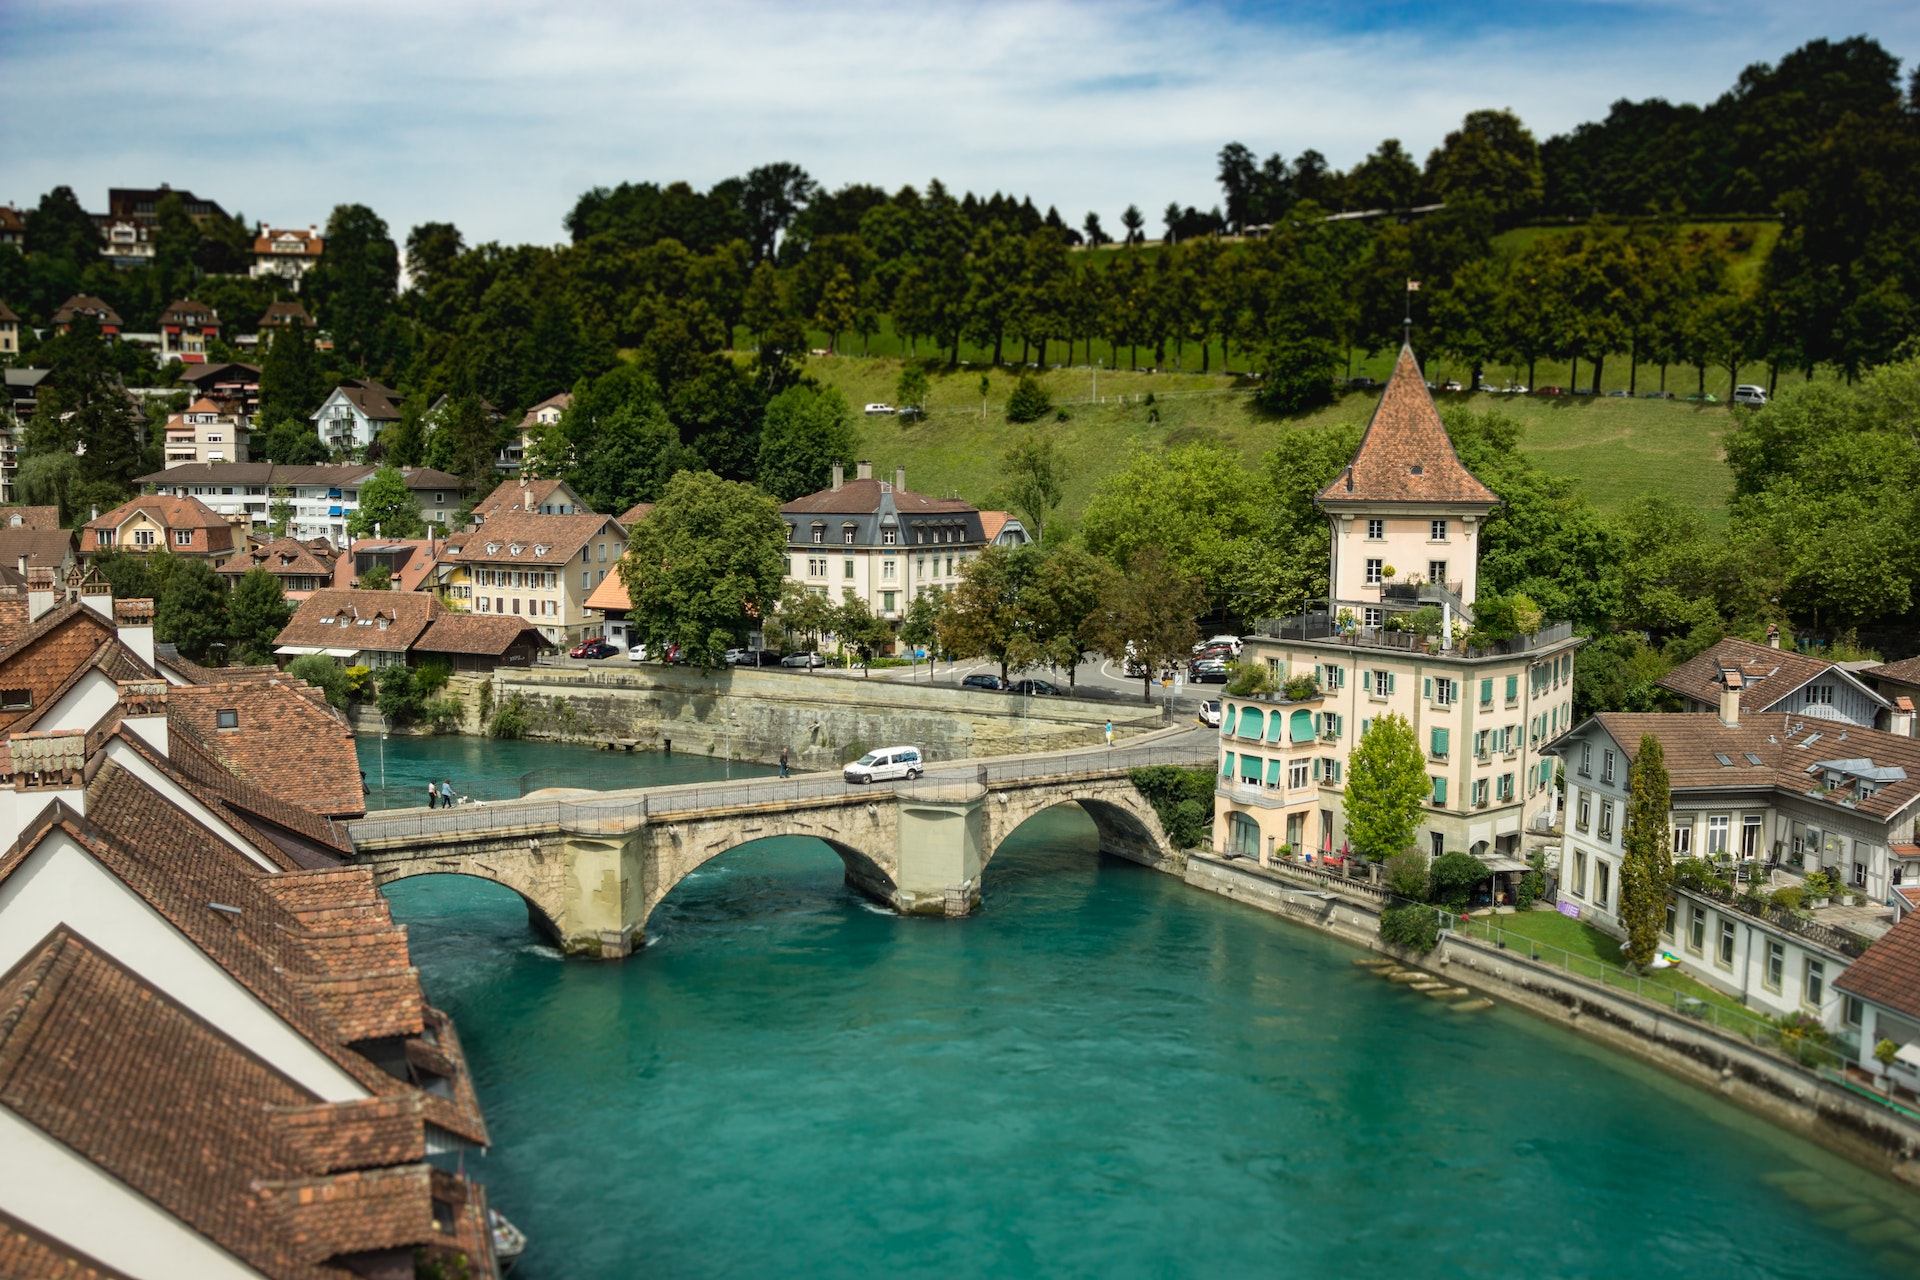 Bridge in Bern